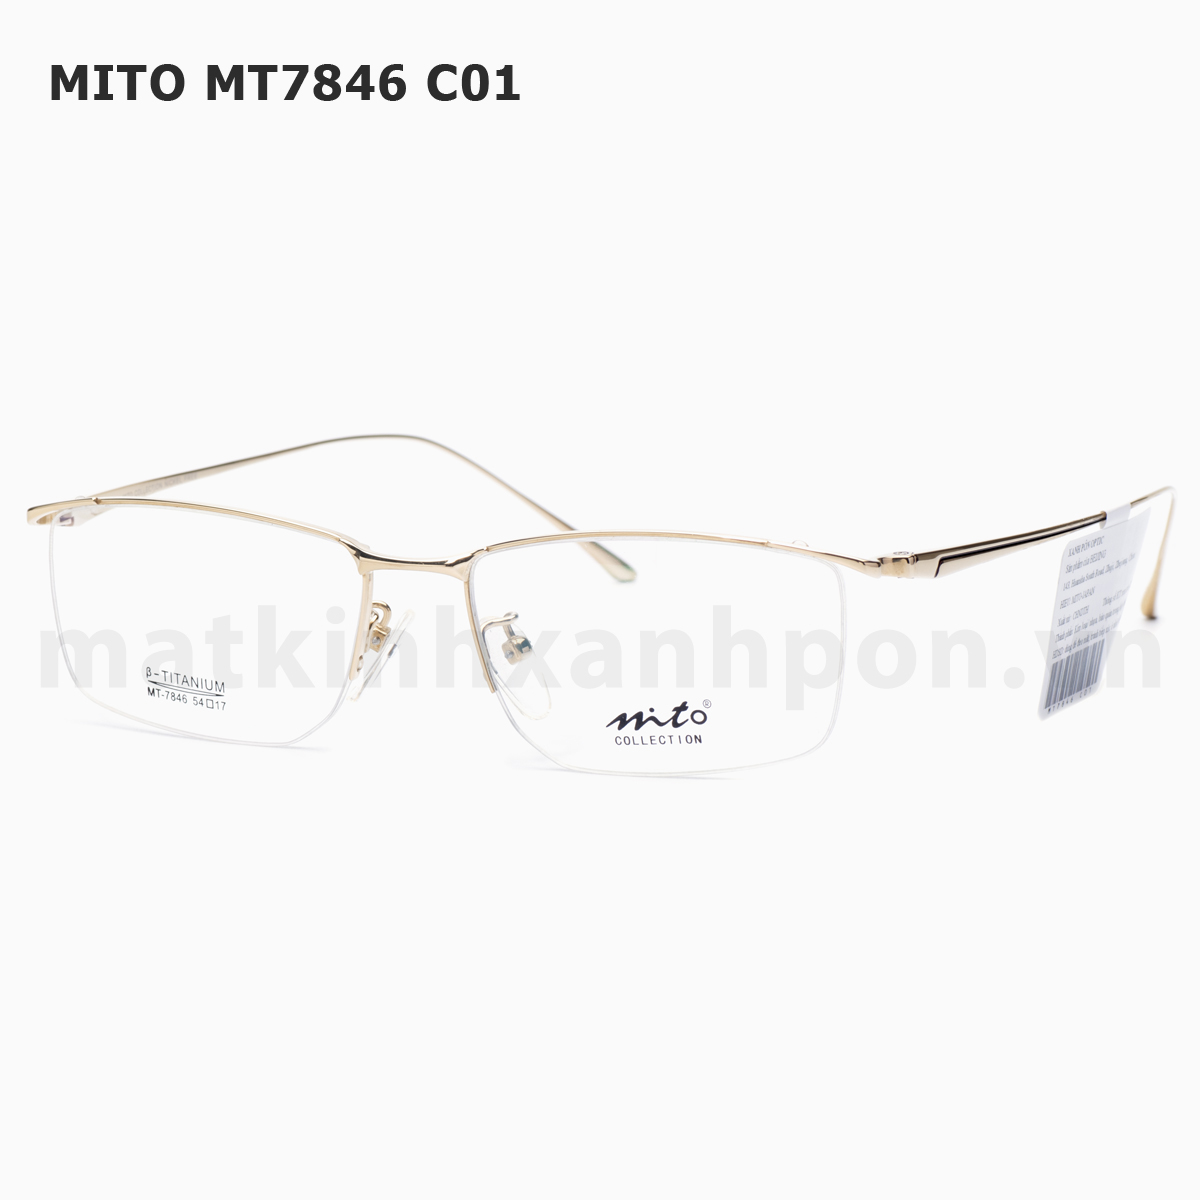 Mito MT7846 C01